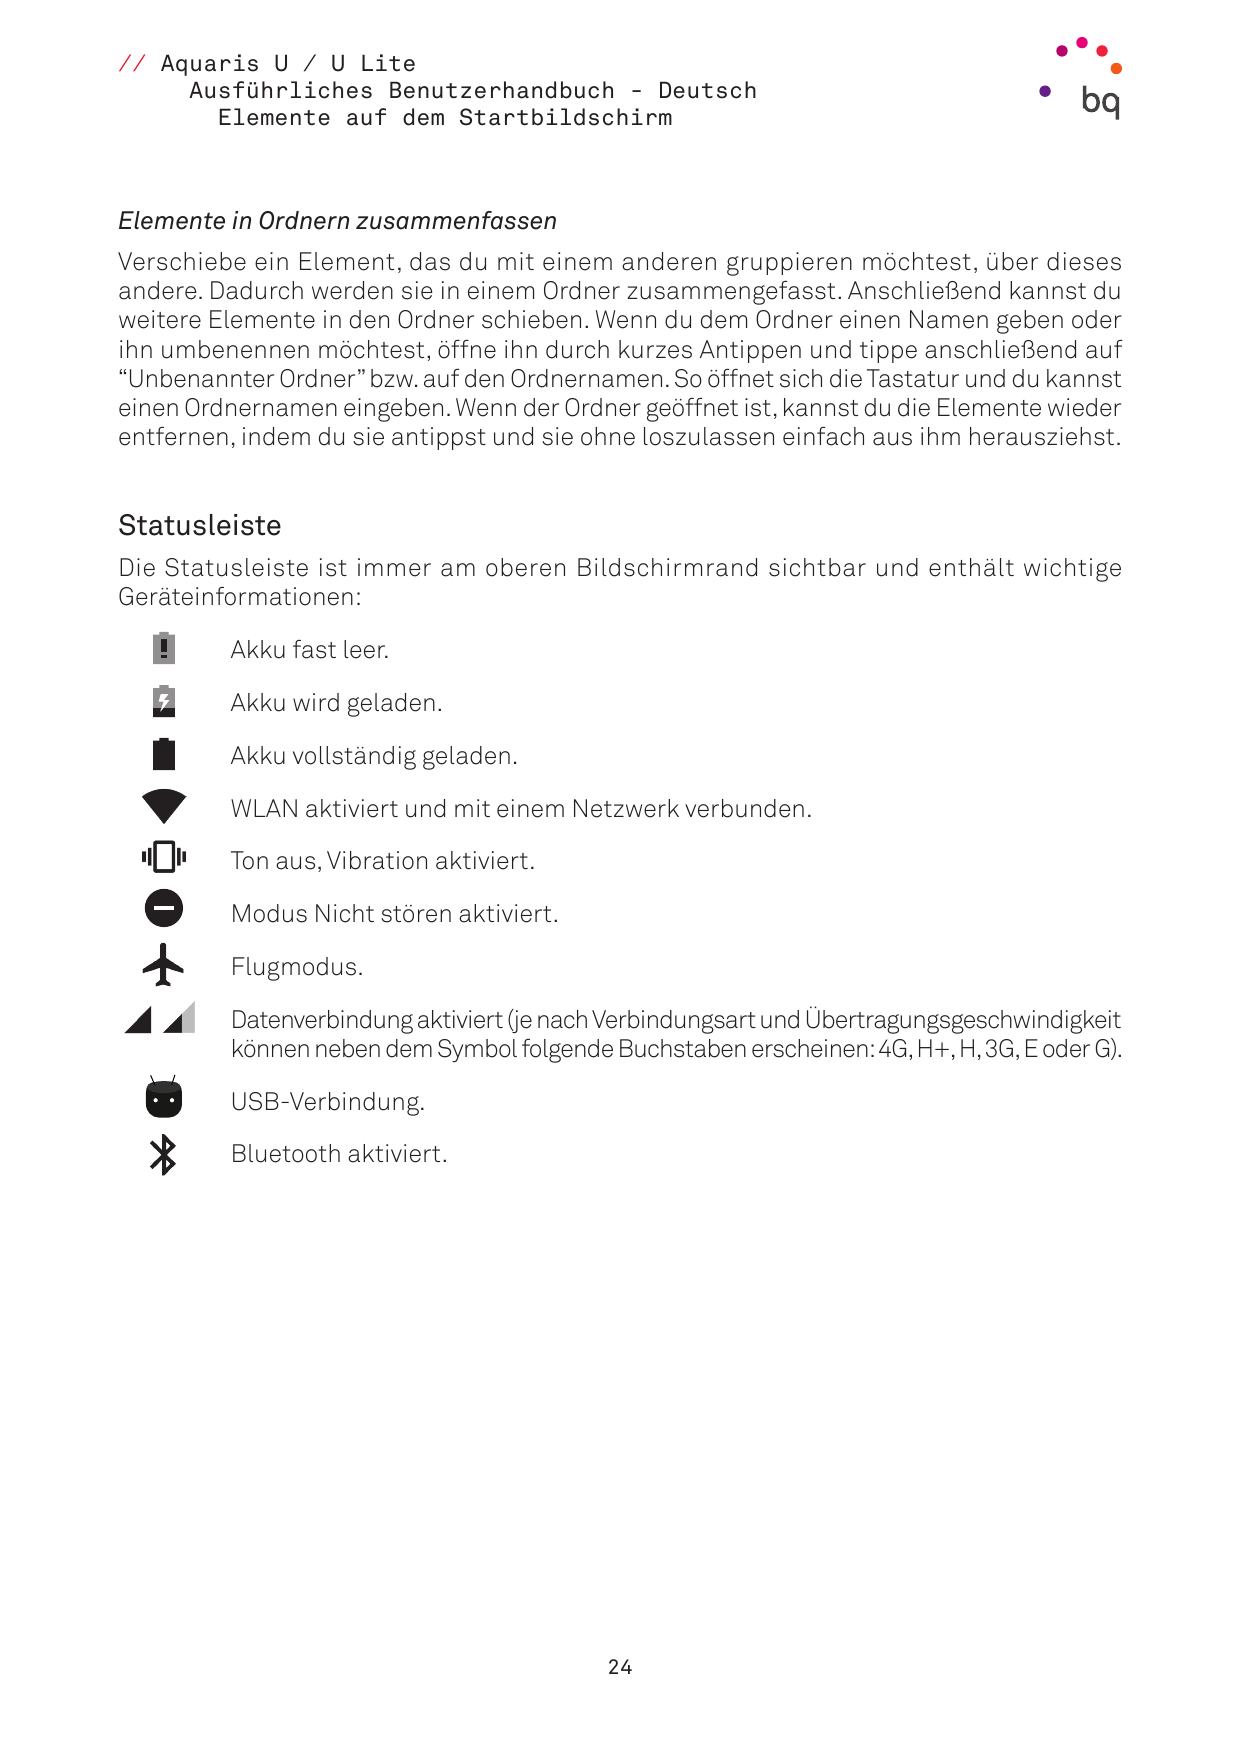 // Aquaris U / U LiteAusführliches Benutzerhandbuch - DeutschElemente auf dem StartbildschirmElemente in Ordnern zusammenfassenV